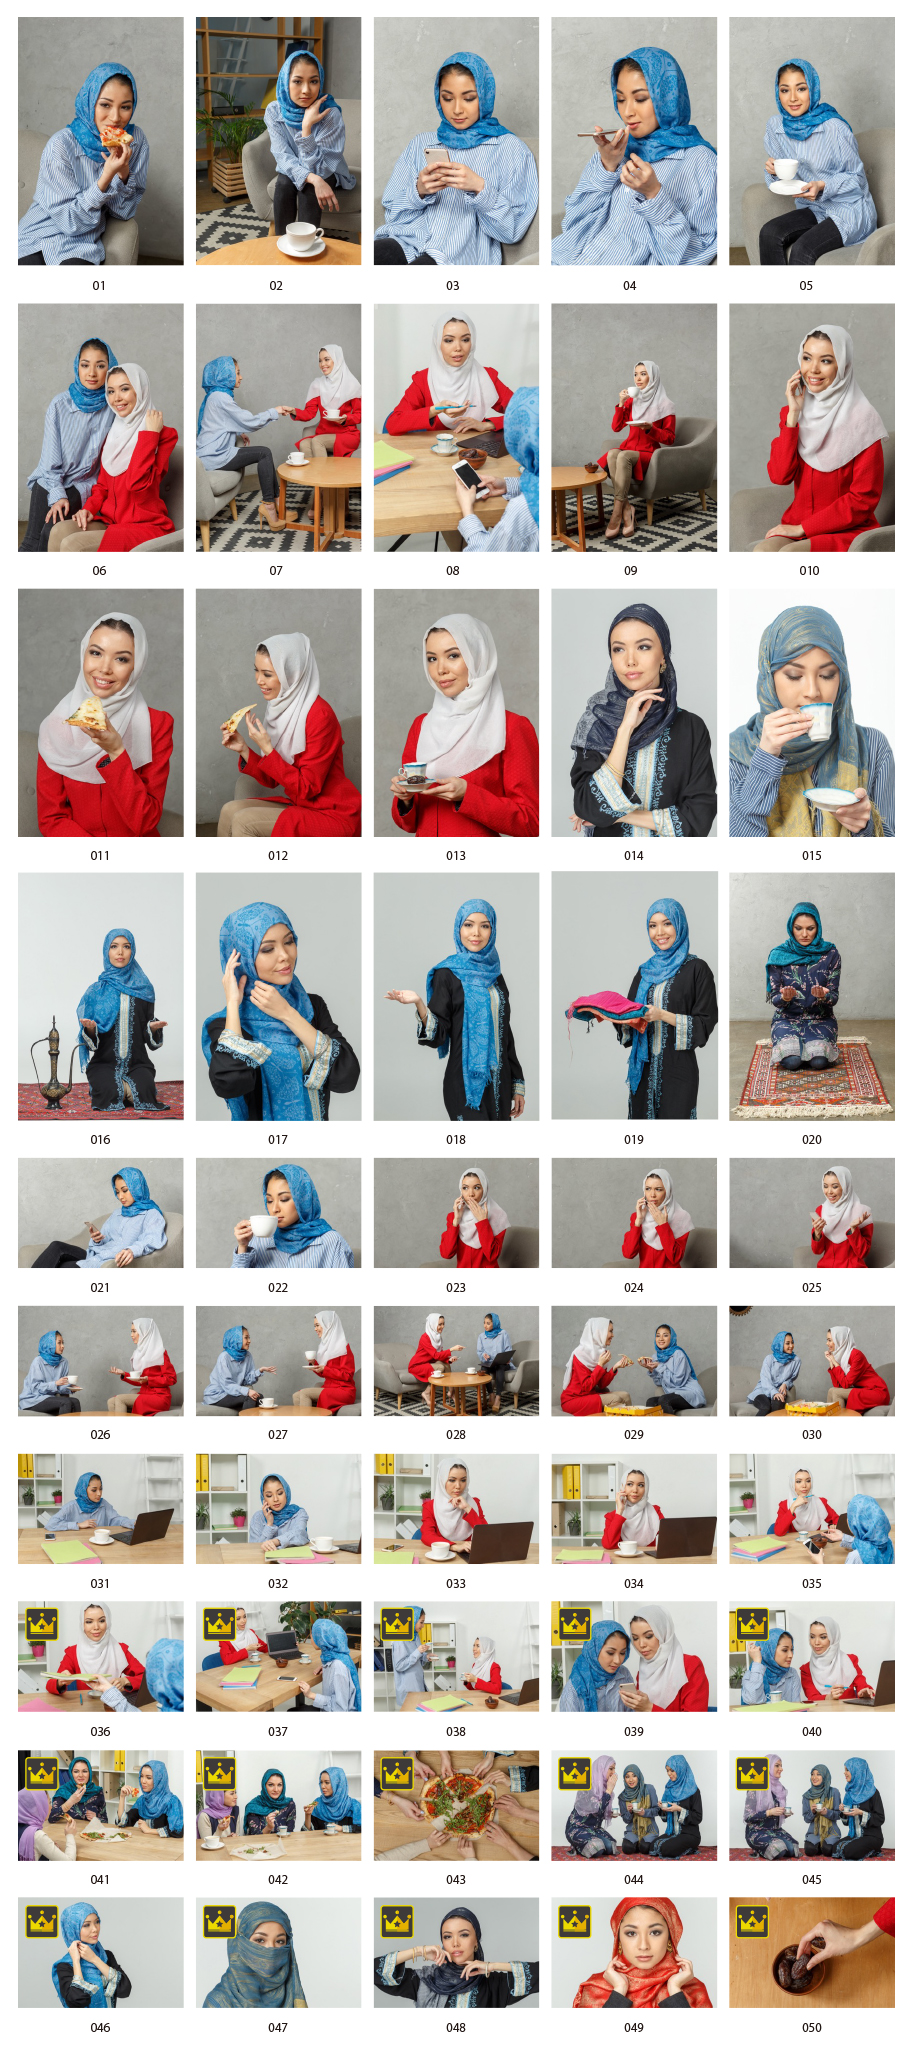 Hijab phụ nữ châu Á hình ảnh chứng khoán